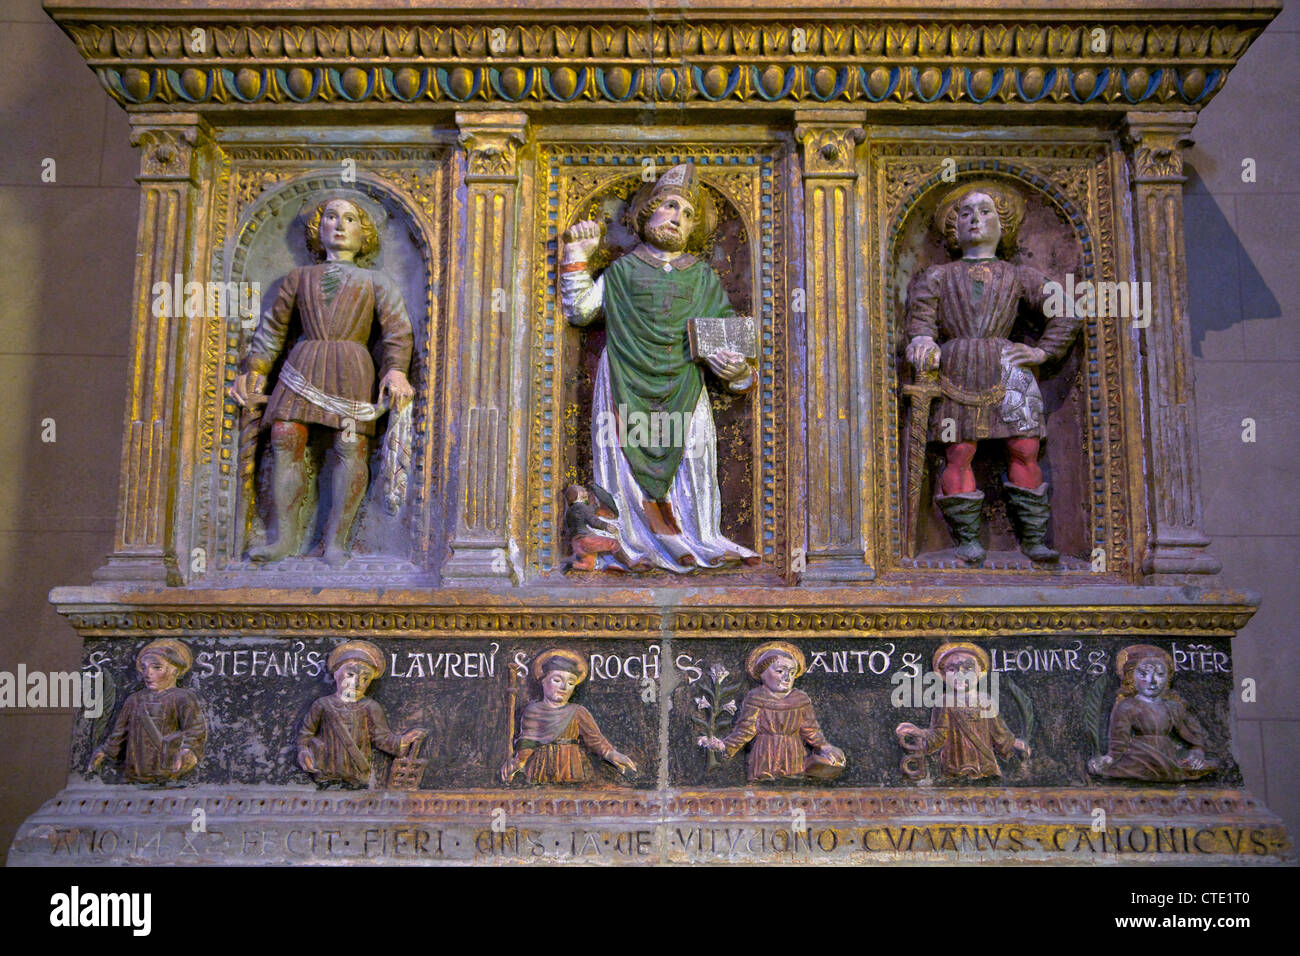 Saint Ambrose Altar-Piece, Como Duomo, city centre, Lake Como, Italy, Europe Stock Photo